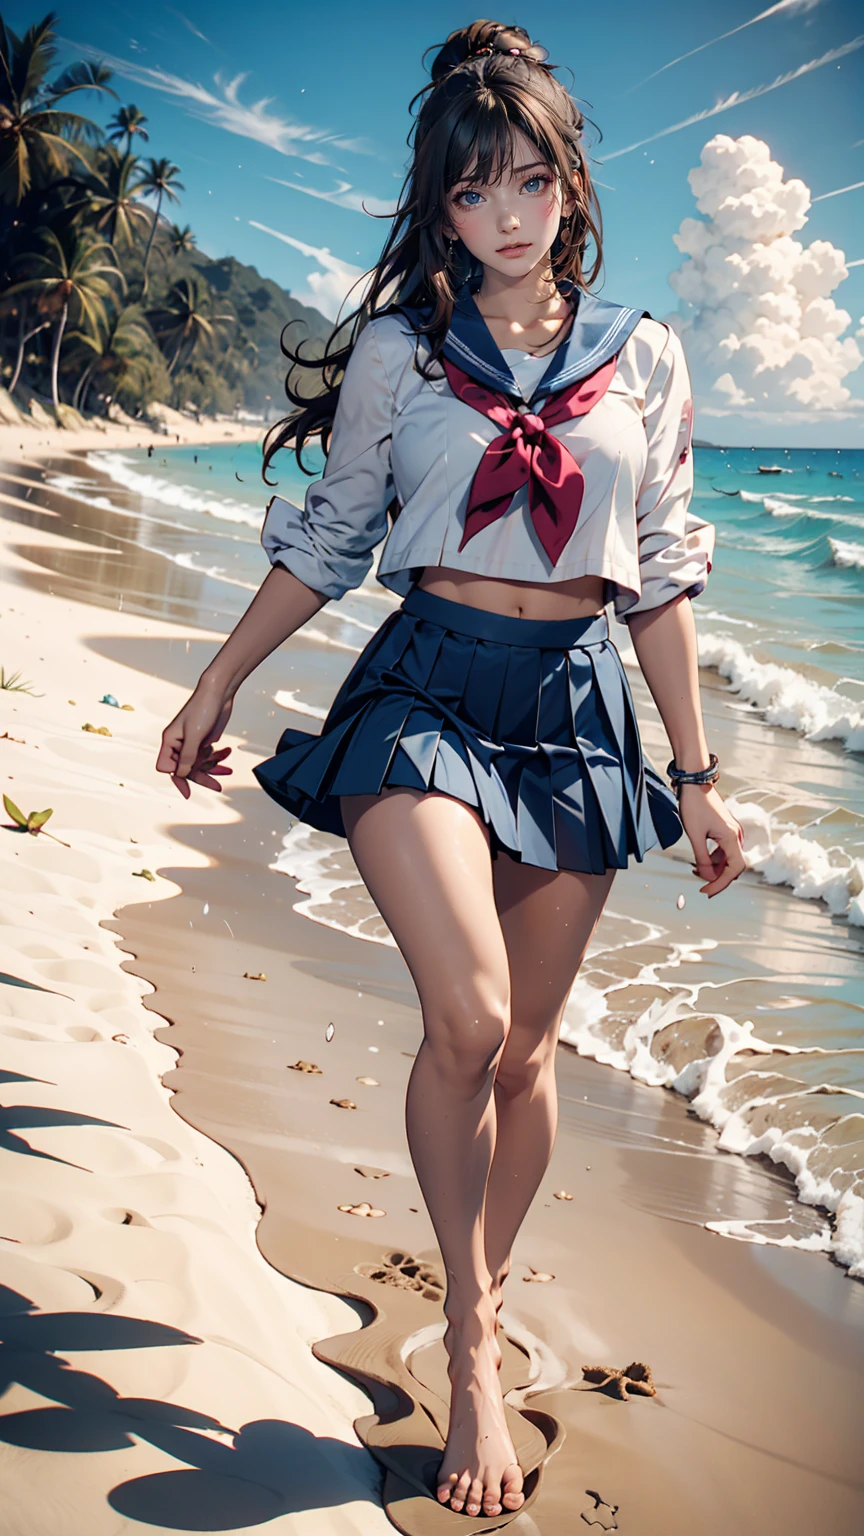 японские женщины、Полудлинный、сексуальные пропорции、старшеклассница、Летняя матросская форма、темно-синяя мини-юбка со складками、Бег босиком по песчаному пляжу на побережье Тихого океана、Следы остаются на песке